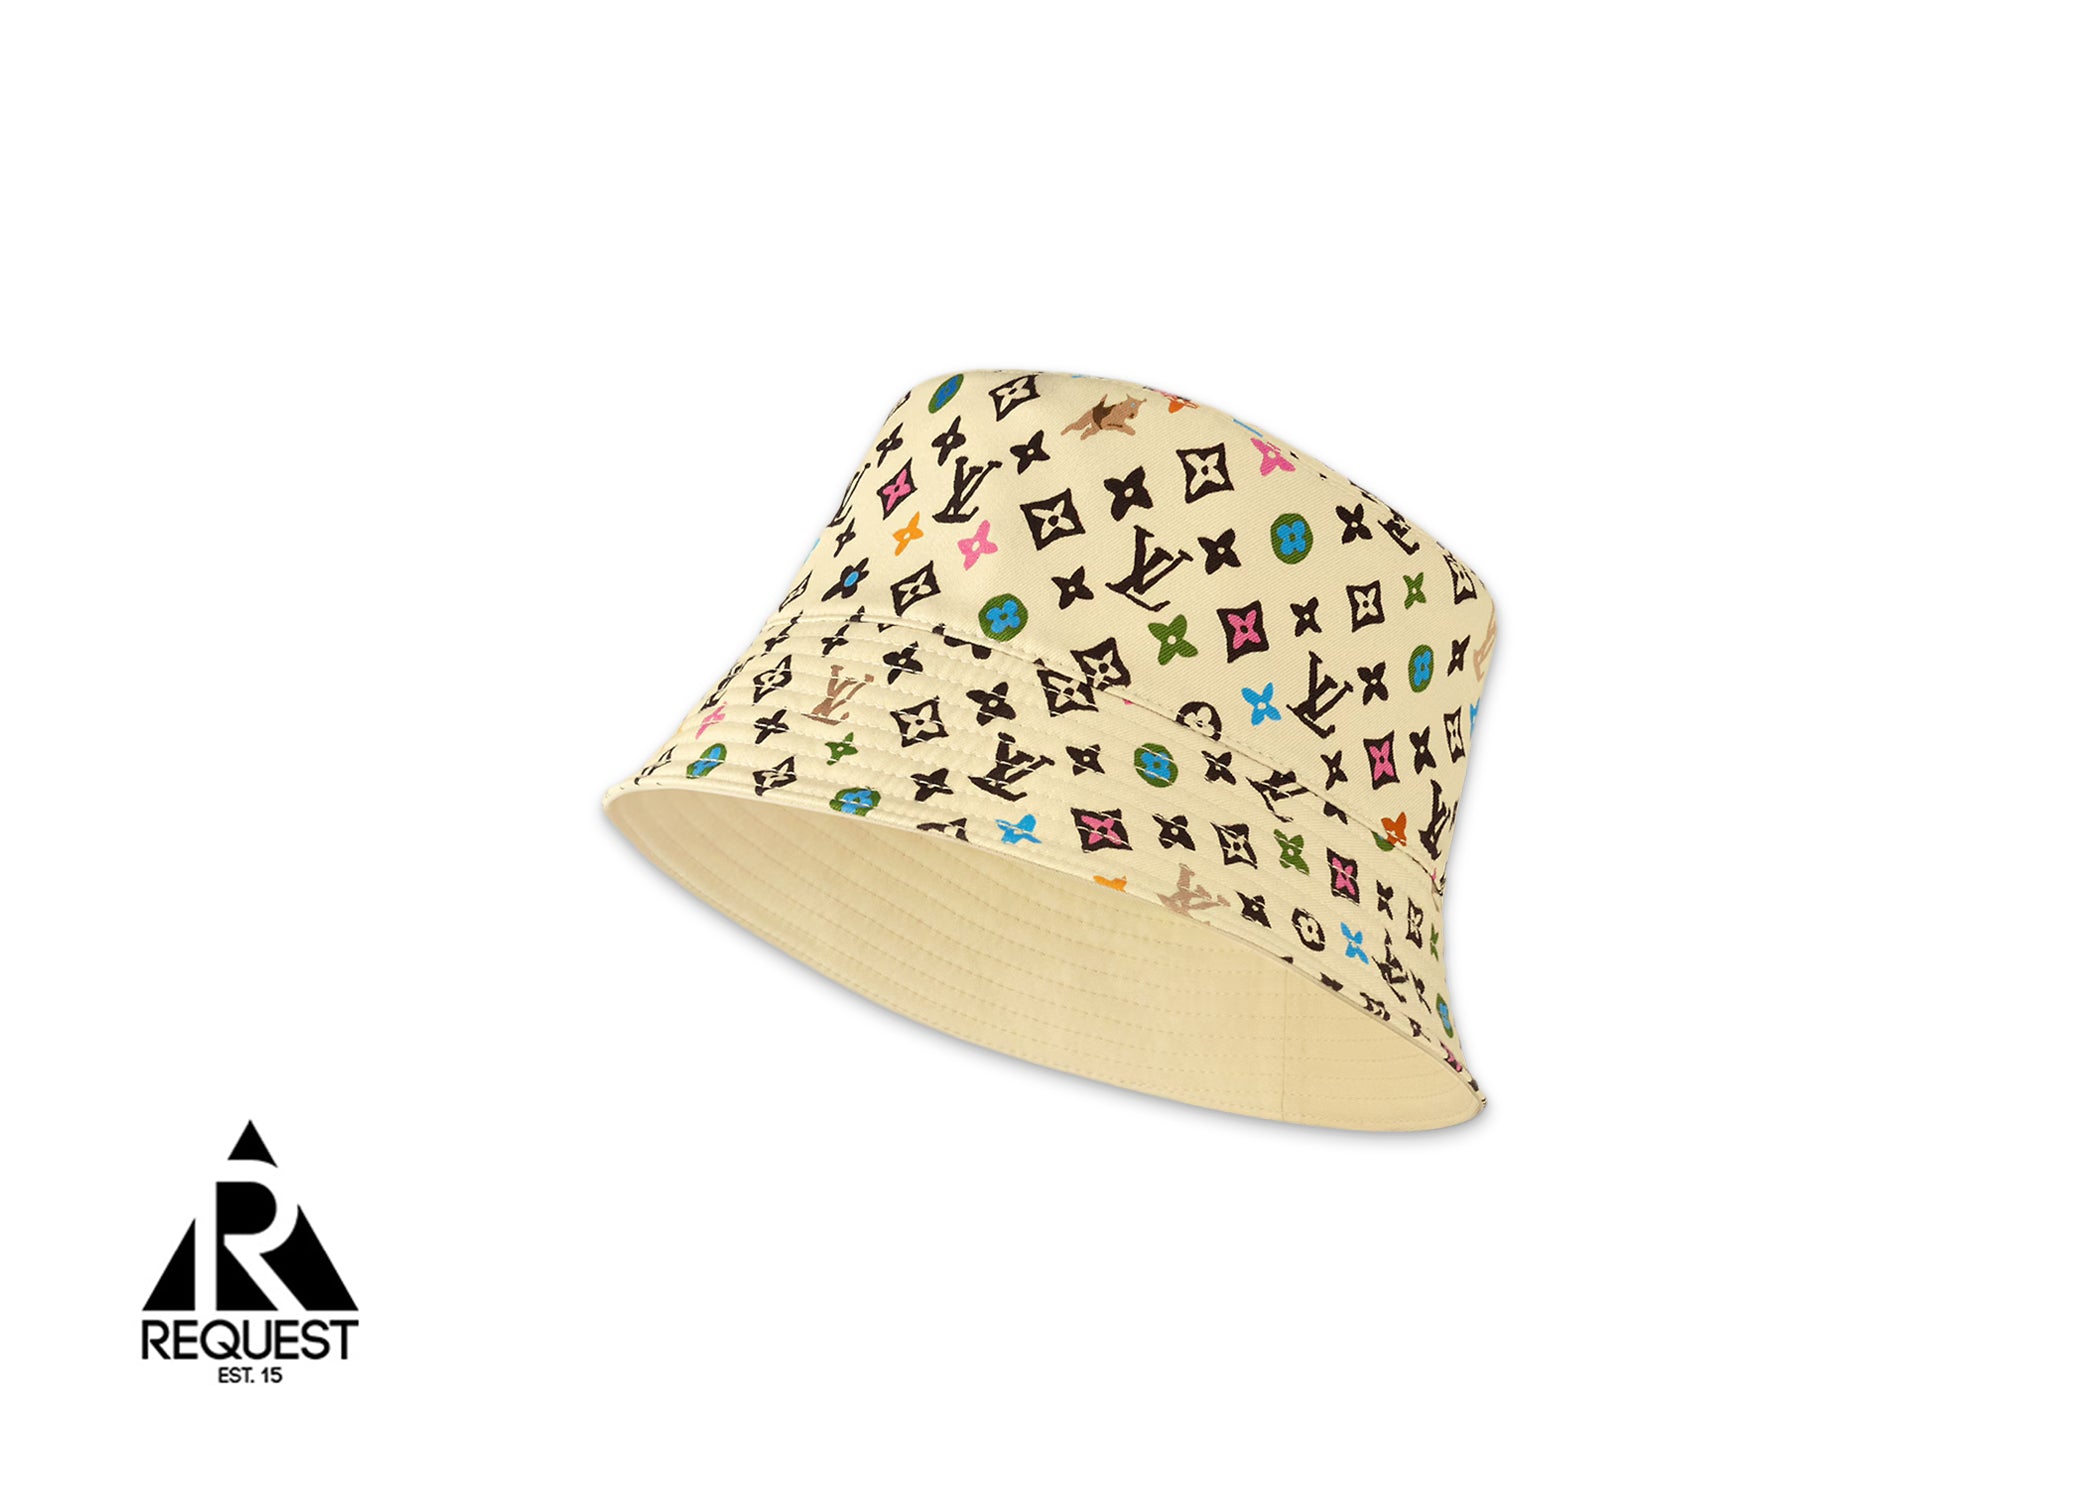 Louis Vuitton By Tyler The Creator Monogram Craggy Reversible Bucket Hat "Beige"